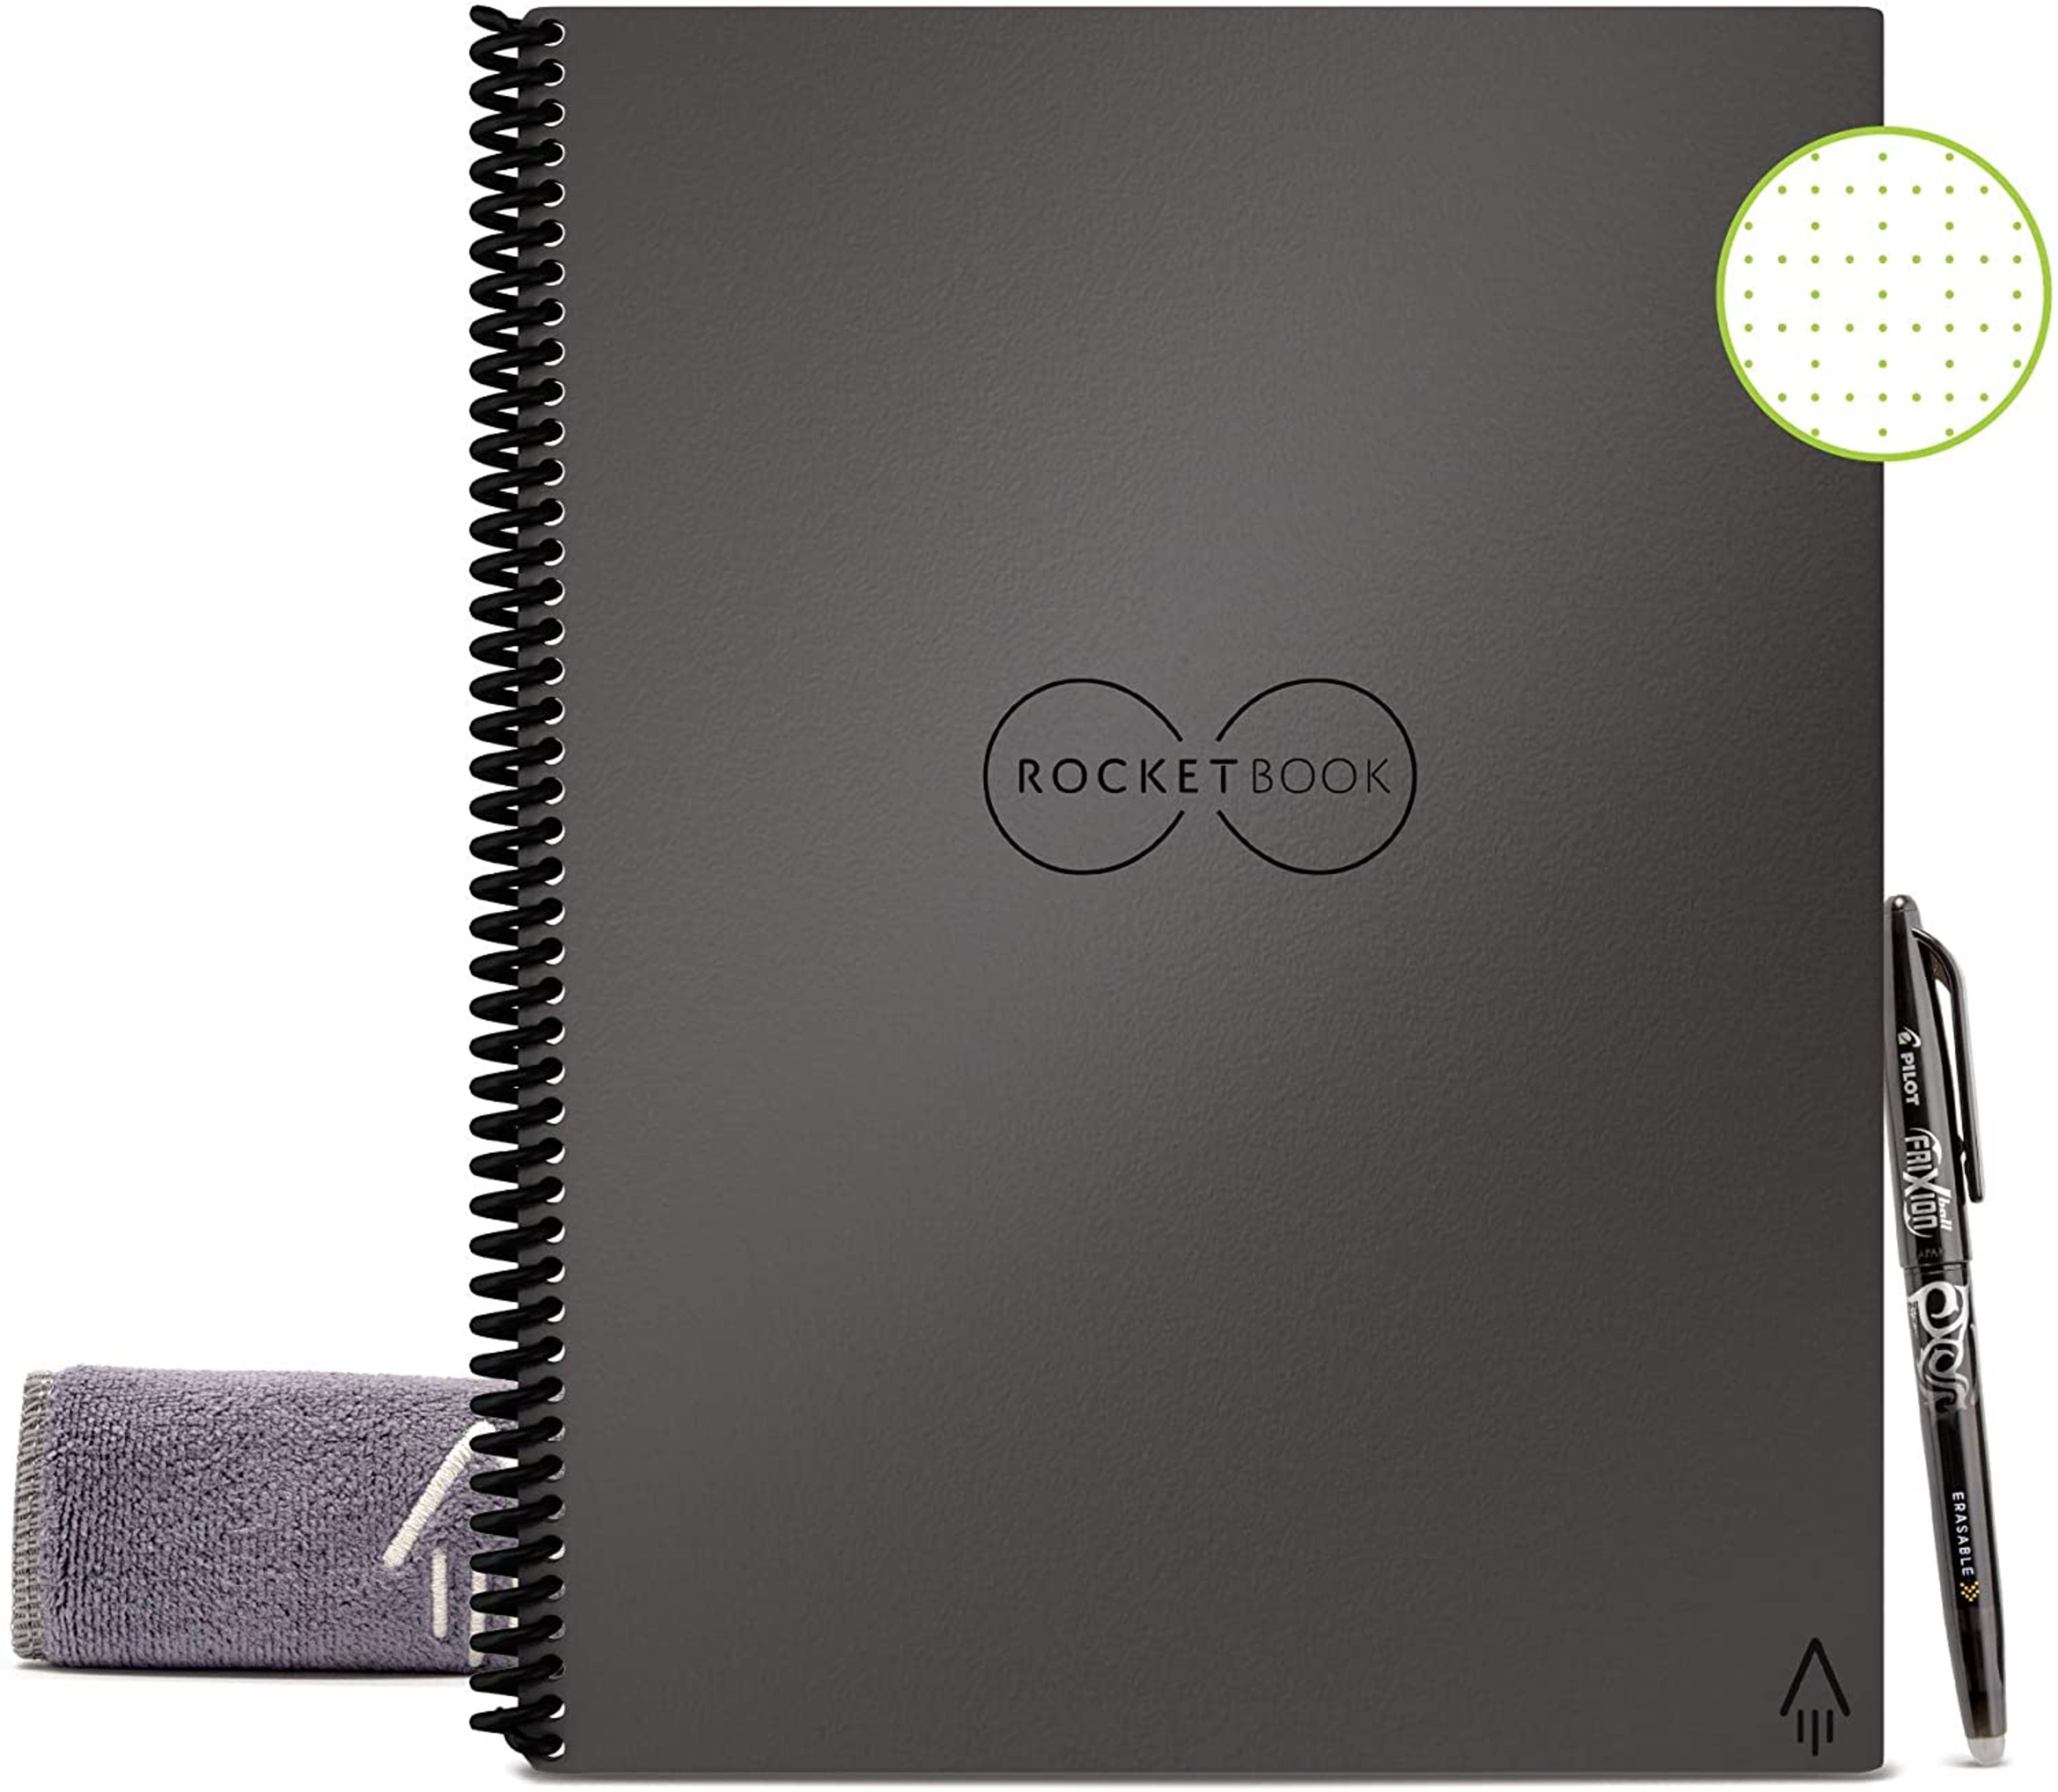 BIC picks up smart notebook maker Rocketbook for $40 million